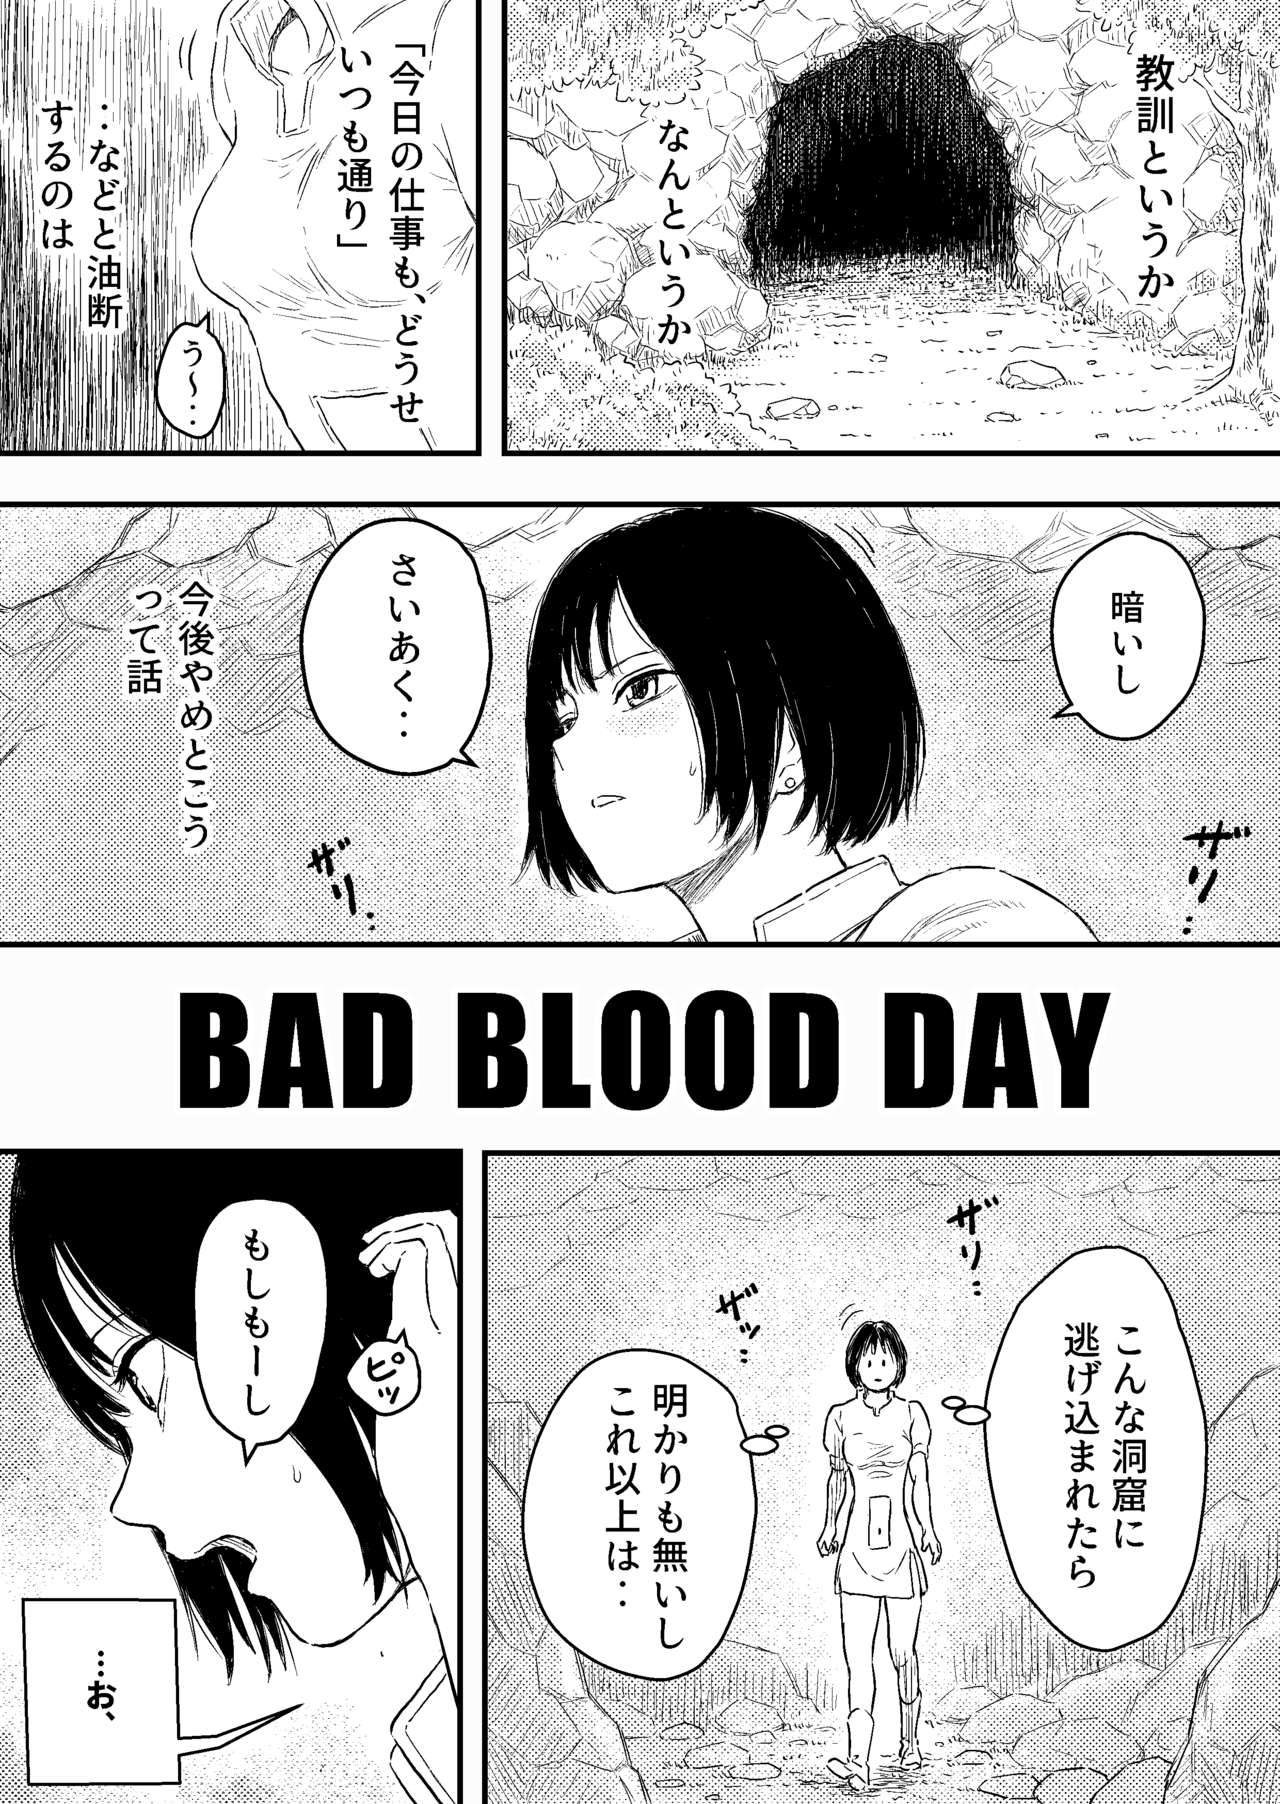 [ブルー・パーカッション (ボーン)] BAD BLOOD DAY『蠢く触手と壊されるヒロインの体』